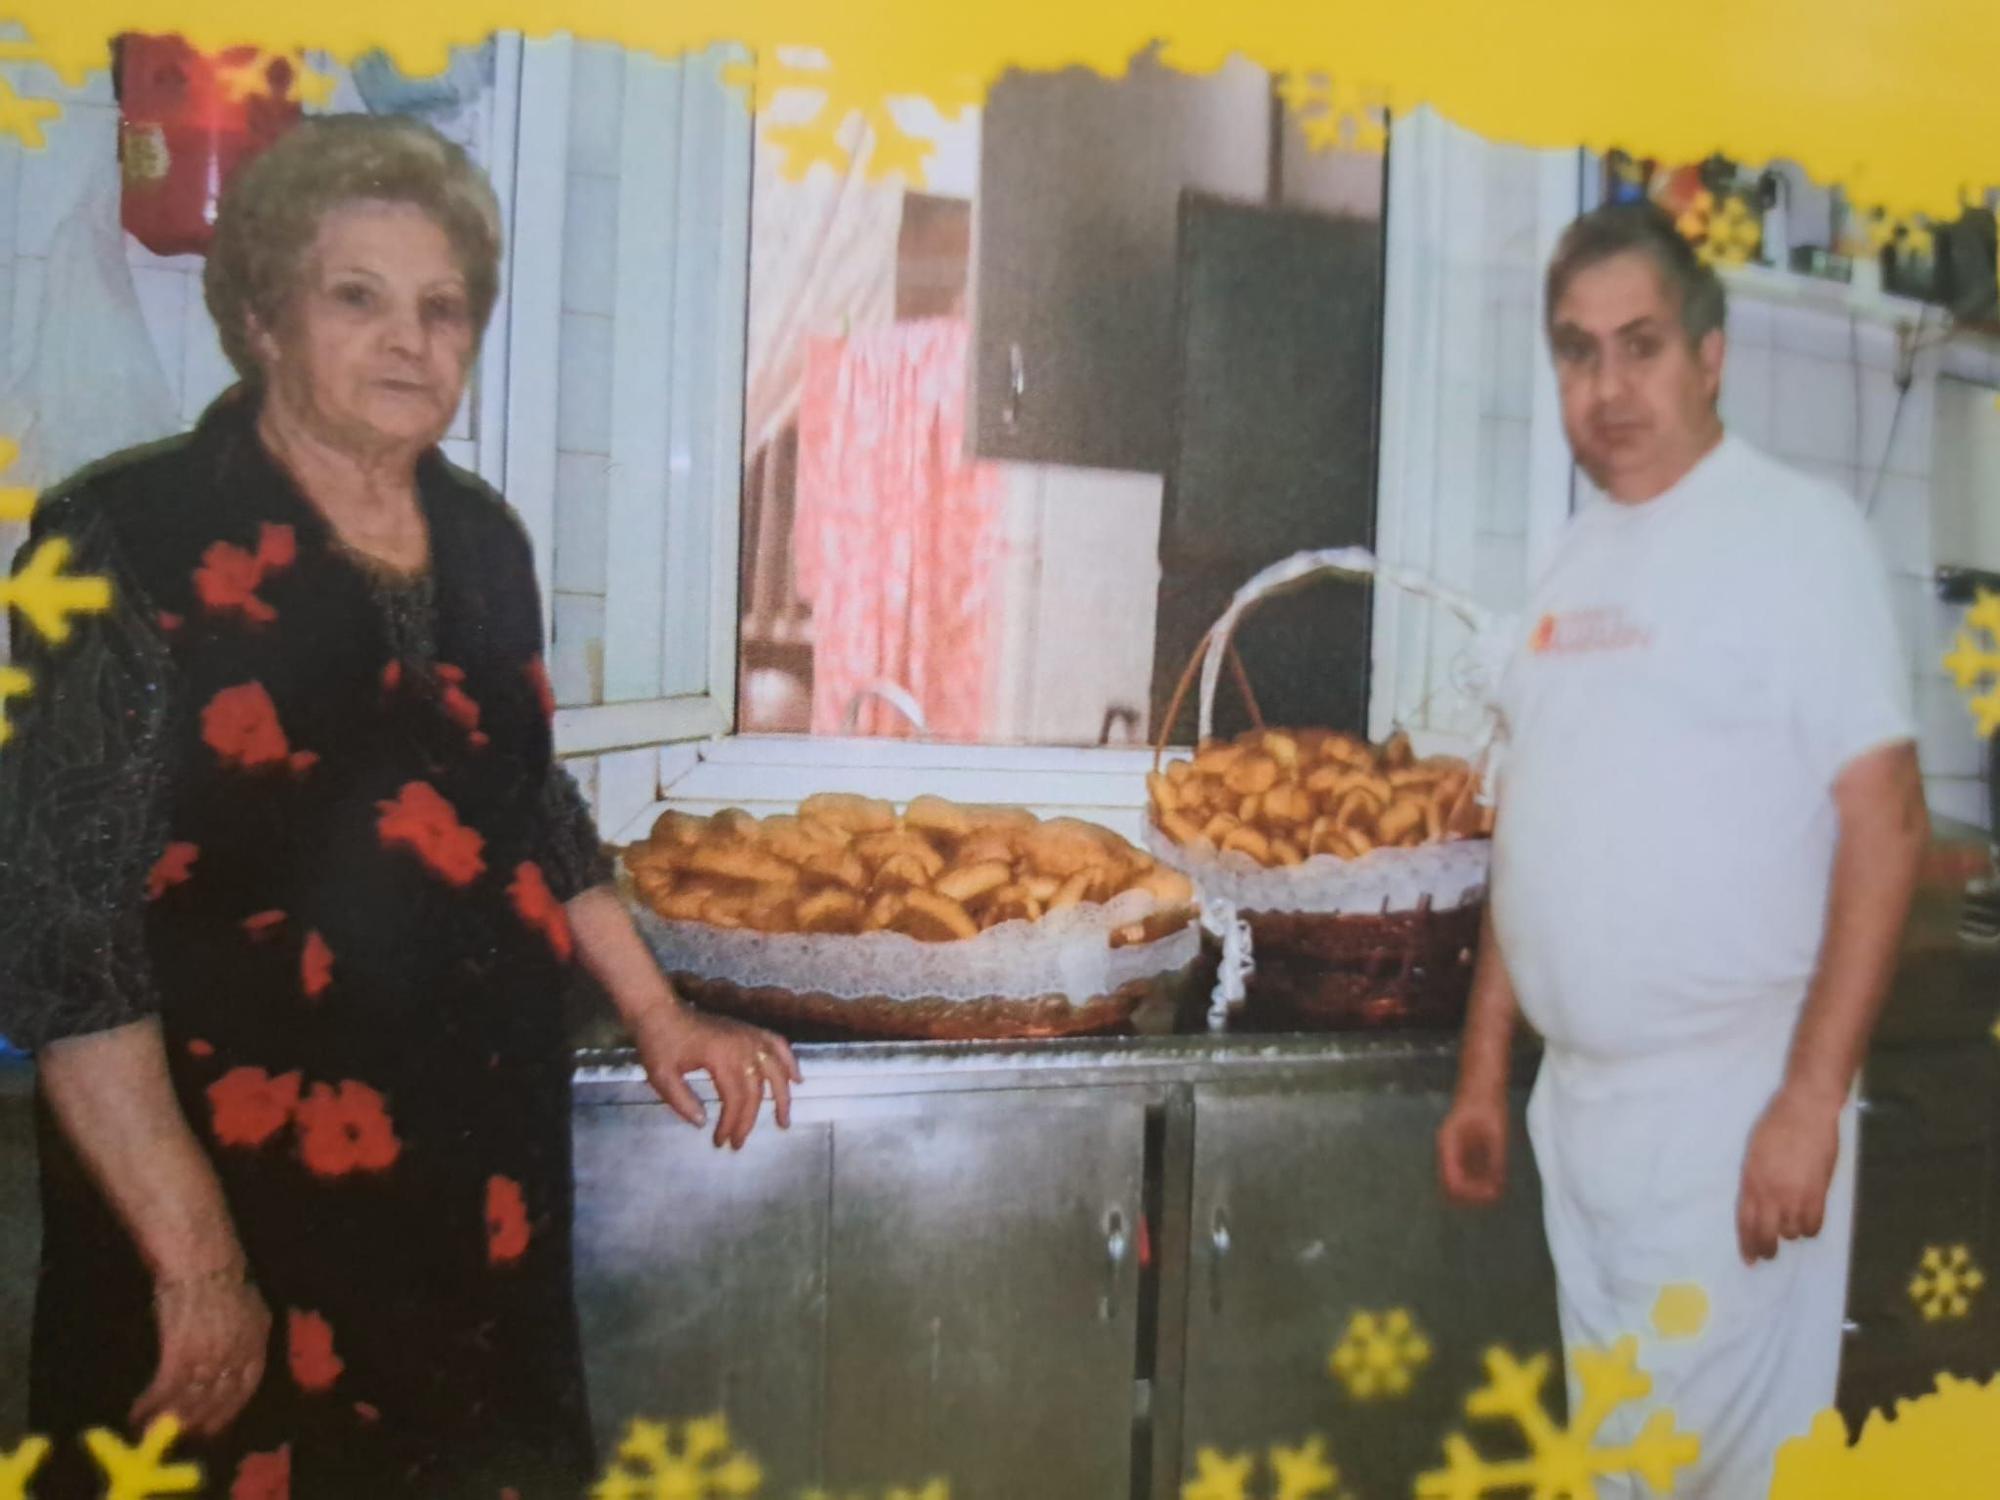 La historia de la panadería Paquita, de Benicàssim, en imágenes